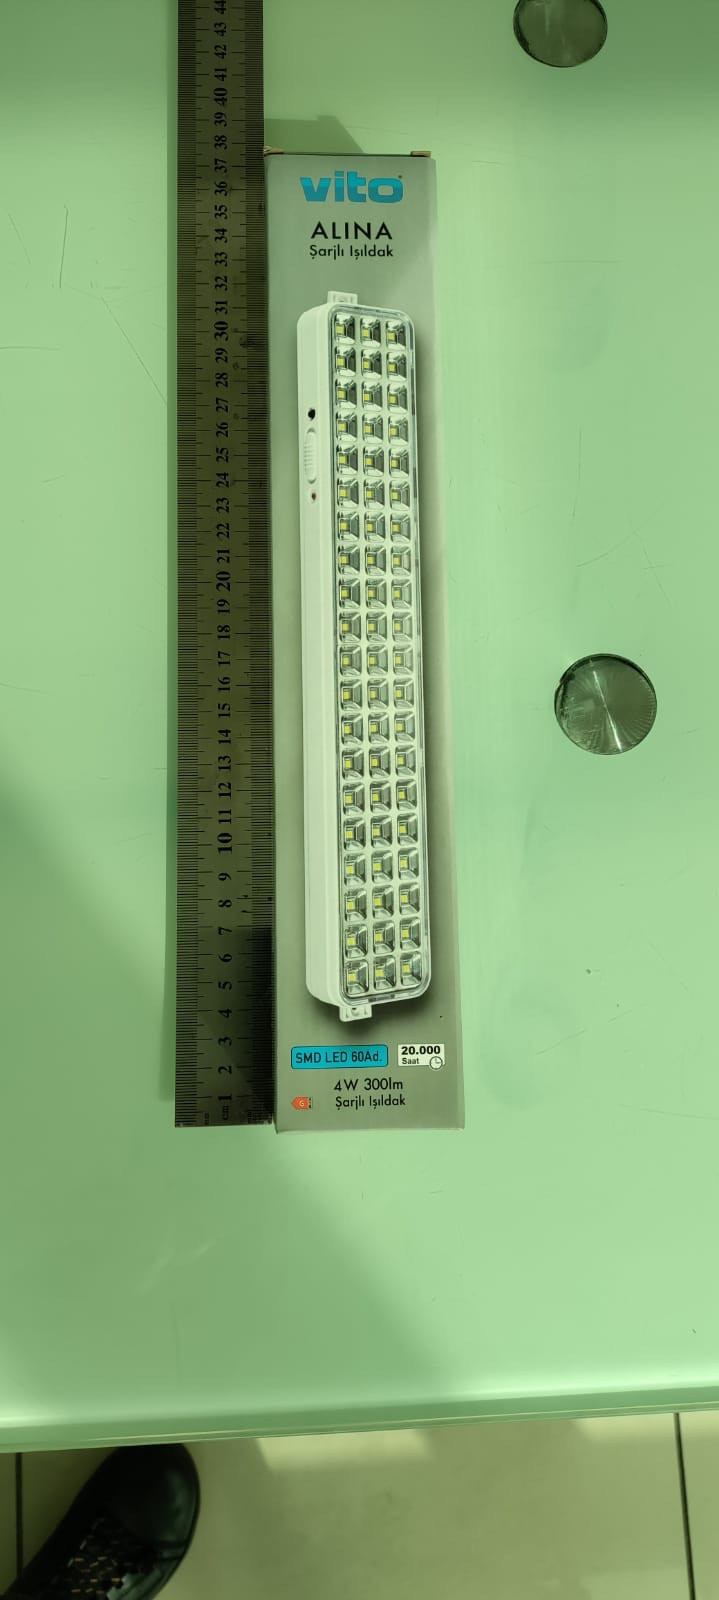 Аккумуляторный светильник VITO Alina 4w 300lm 60LED